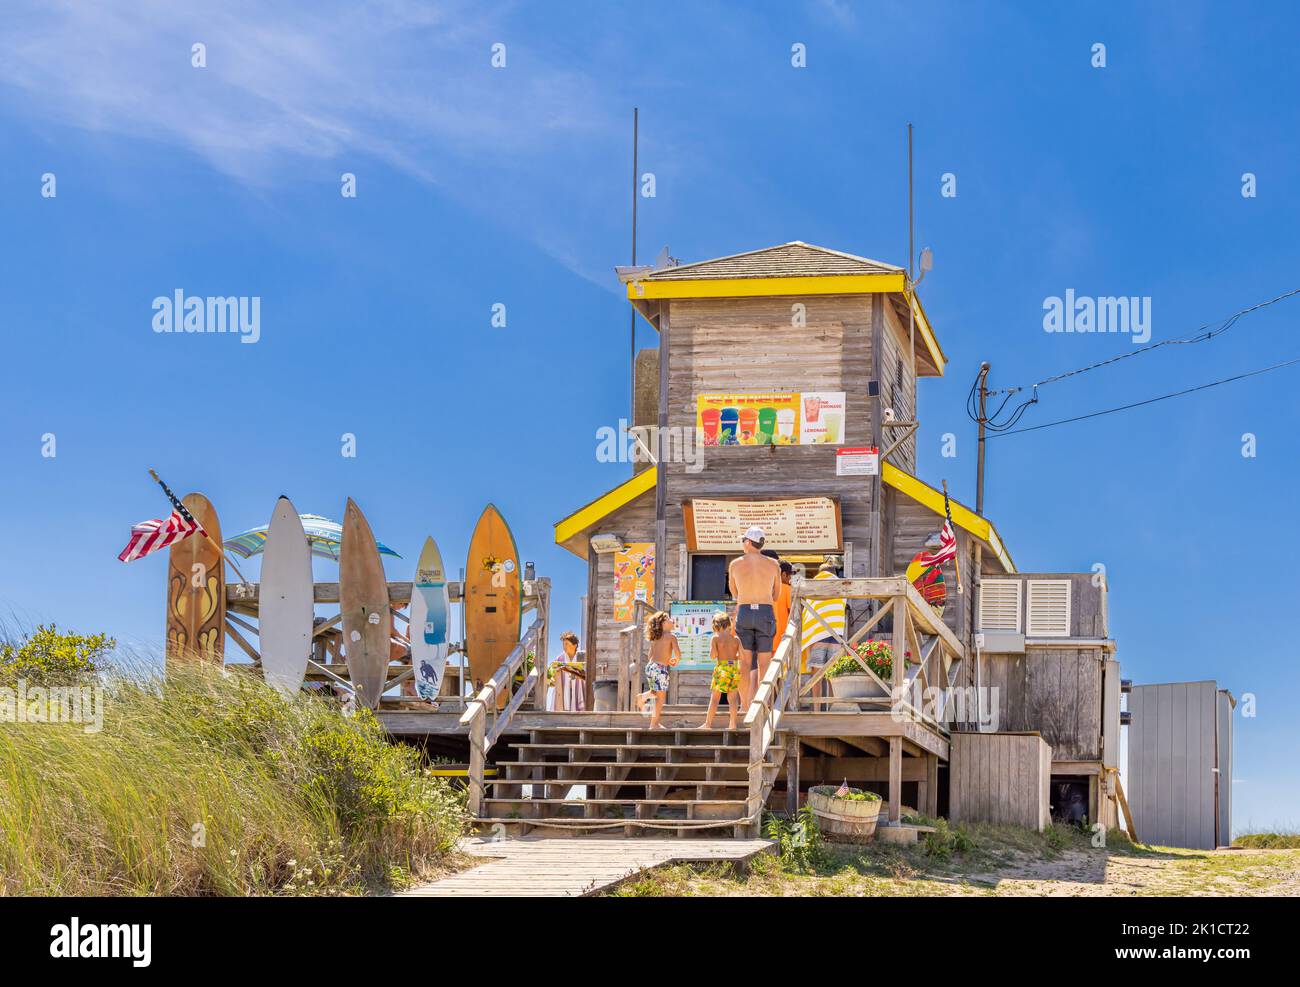 The Beach Hut at Atlantic Beach, Amagansett, NY Stock Photo